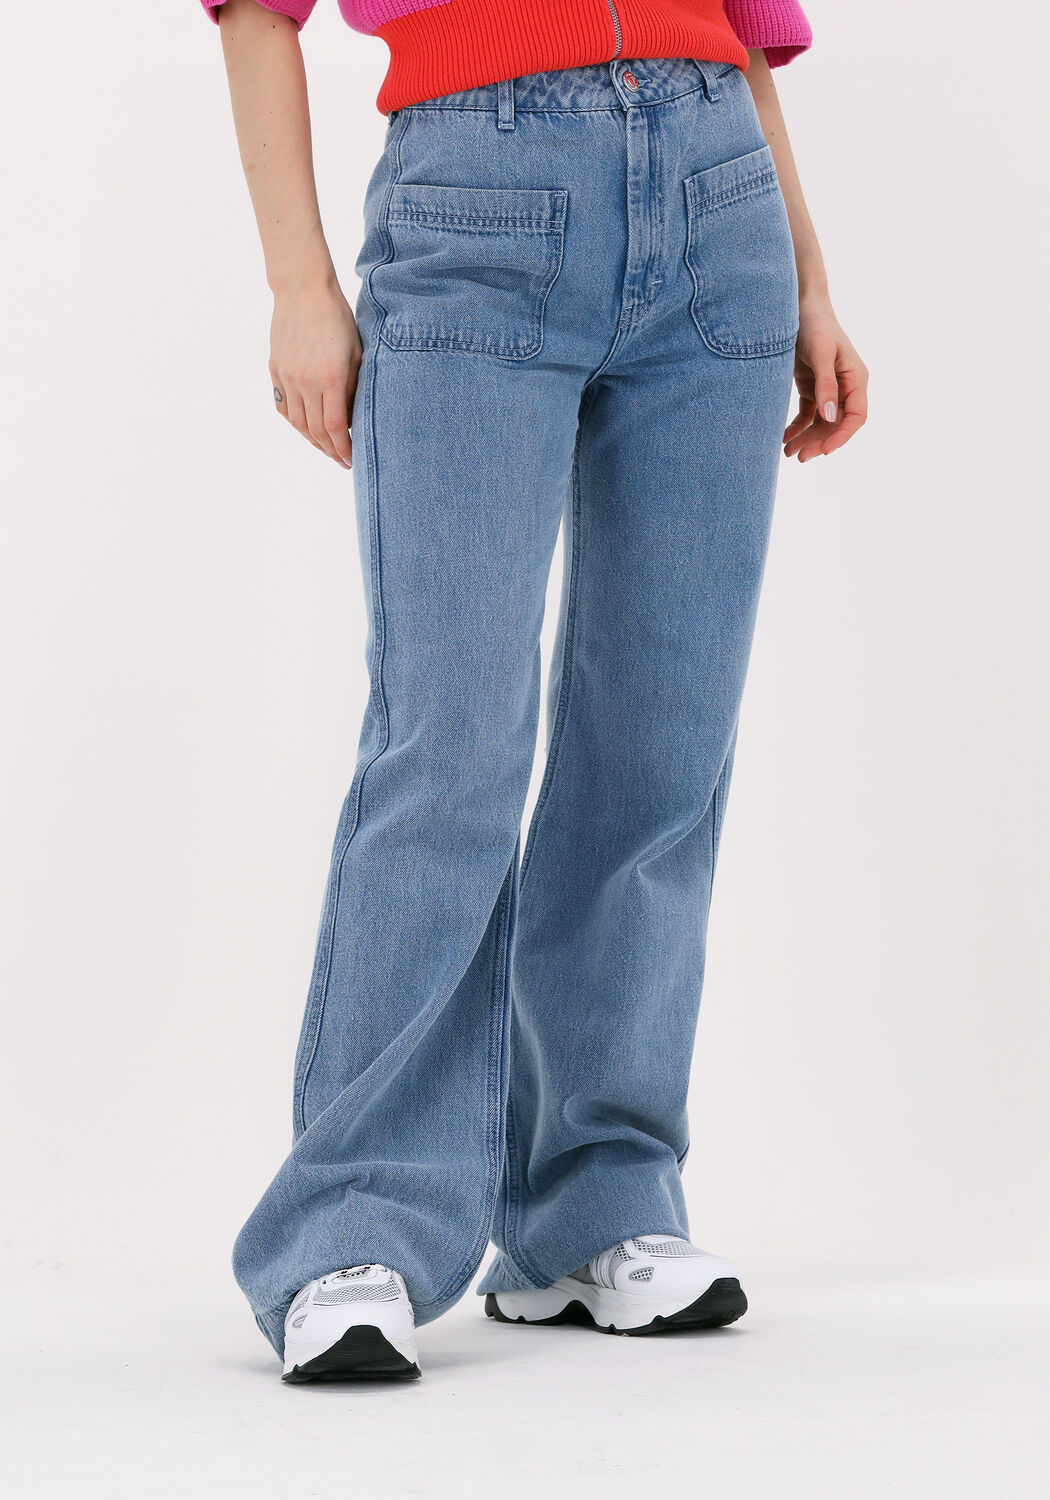 Flared Jeans Mollie Hw Flared Jeans Jean Gestuz en coloris Bleu Femme Vêtements Jeans Jeans à pattes d’éléphant 